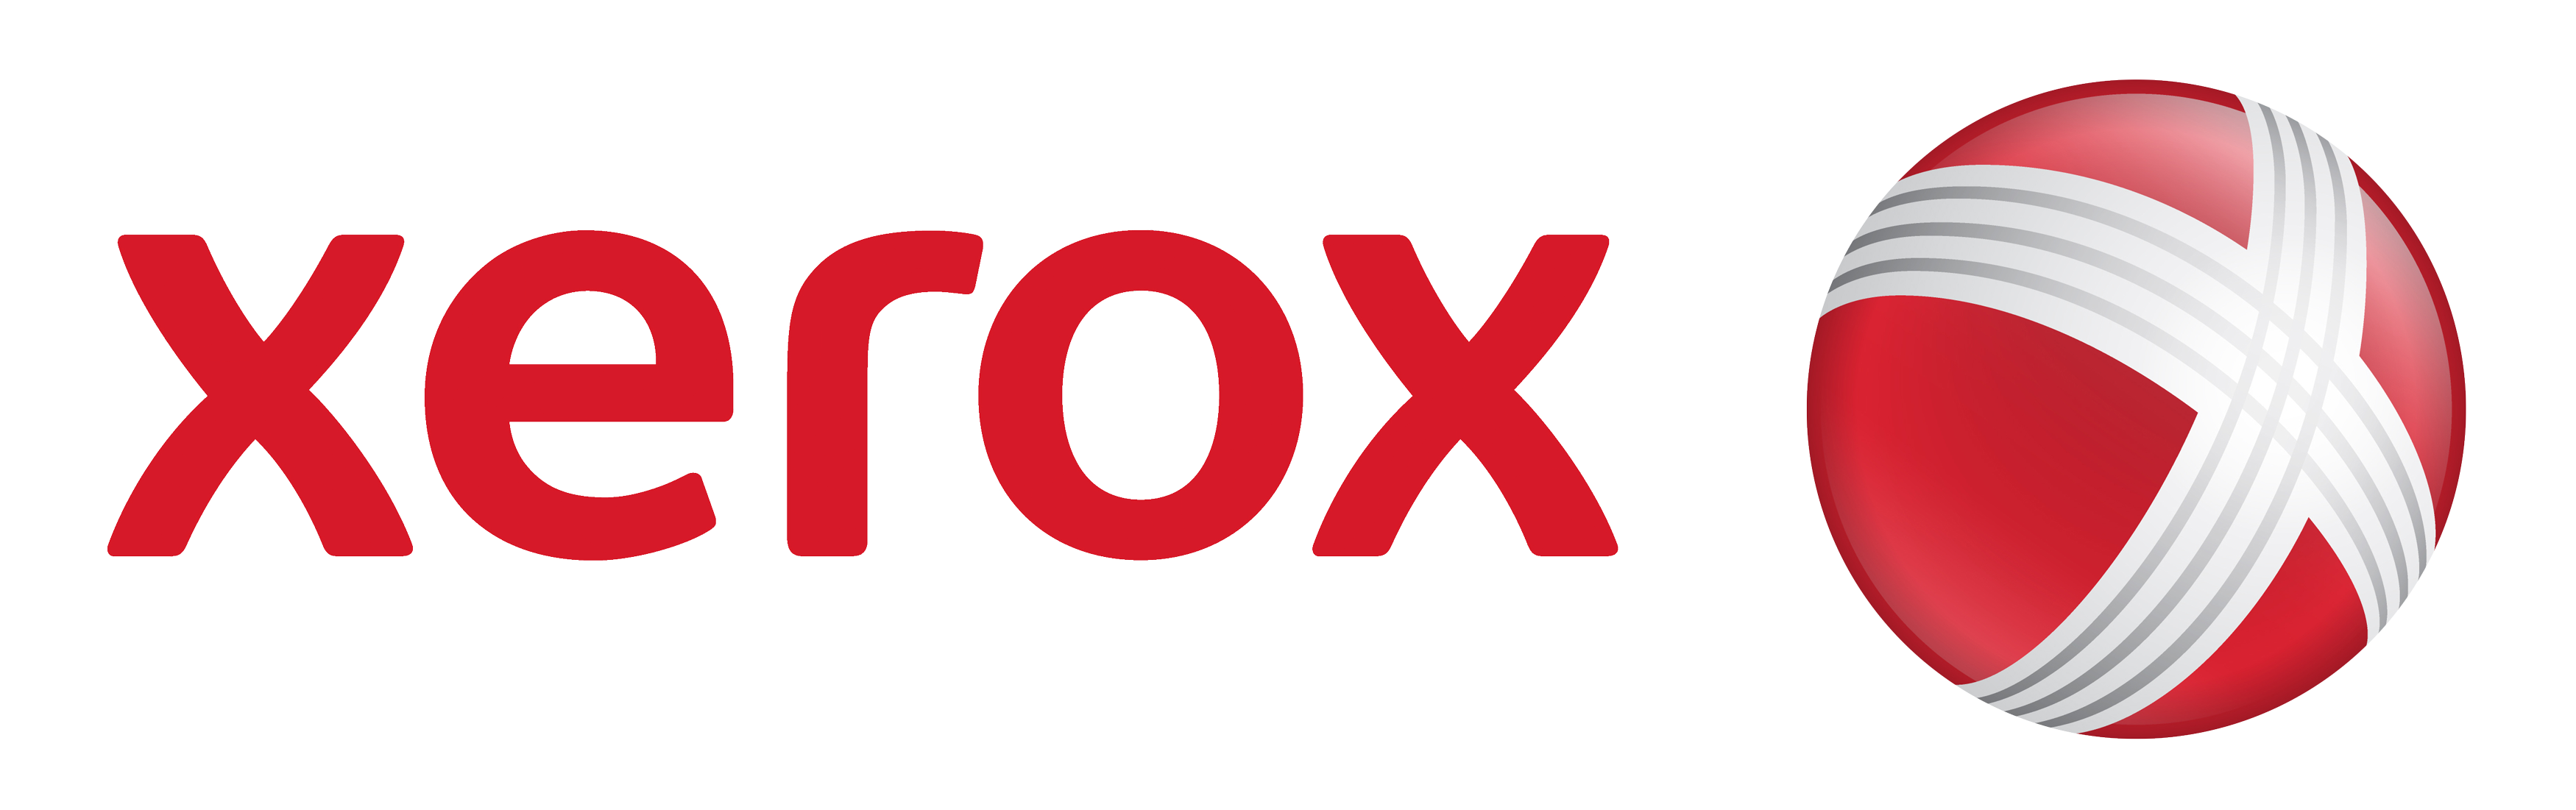 Xerox Logo PNG Image